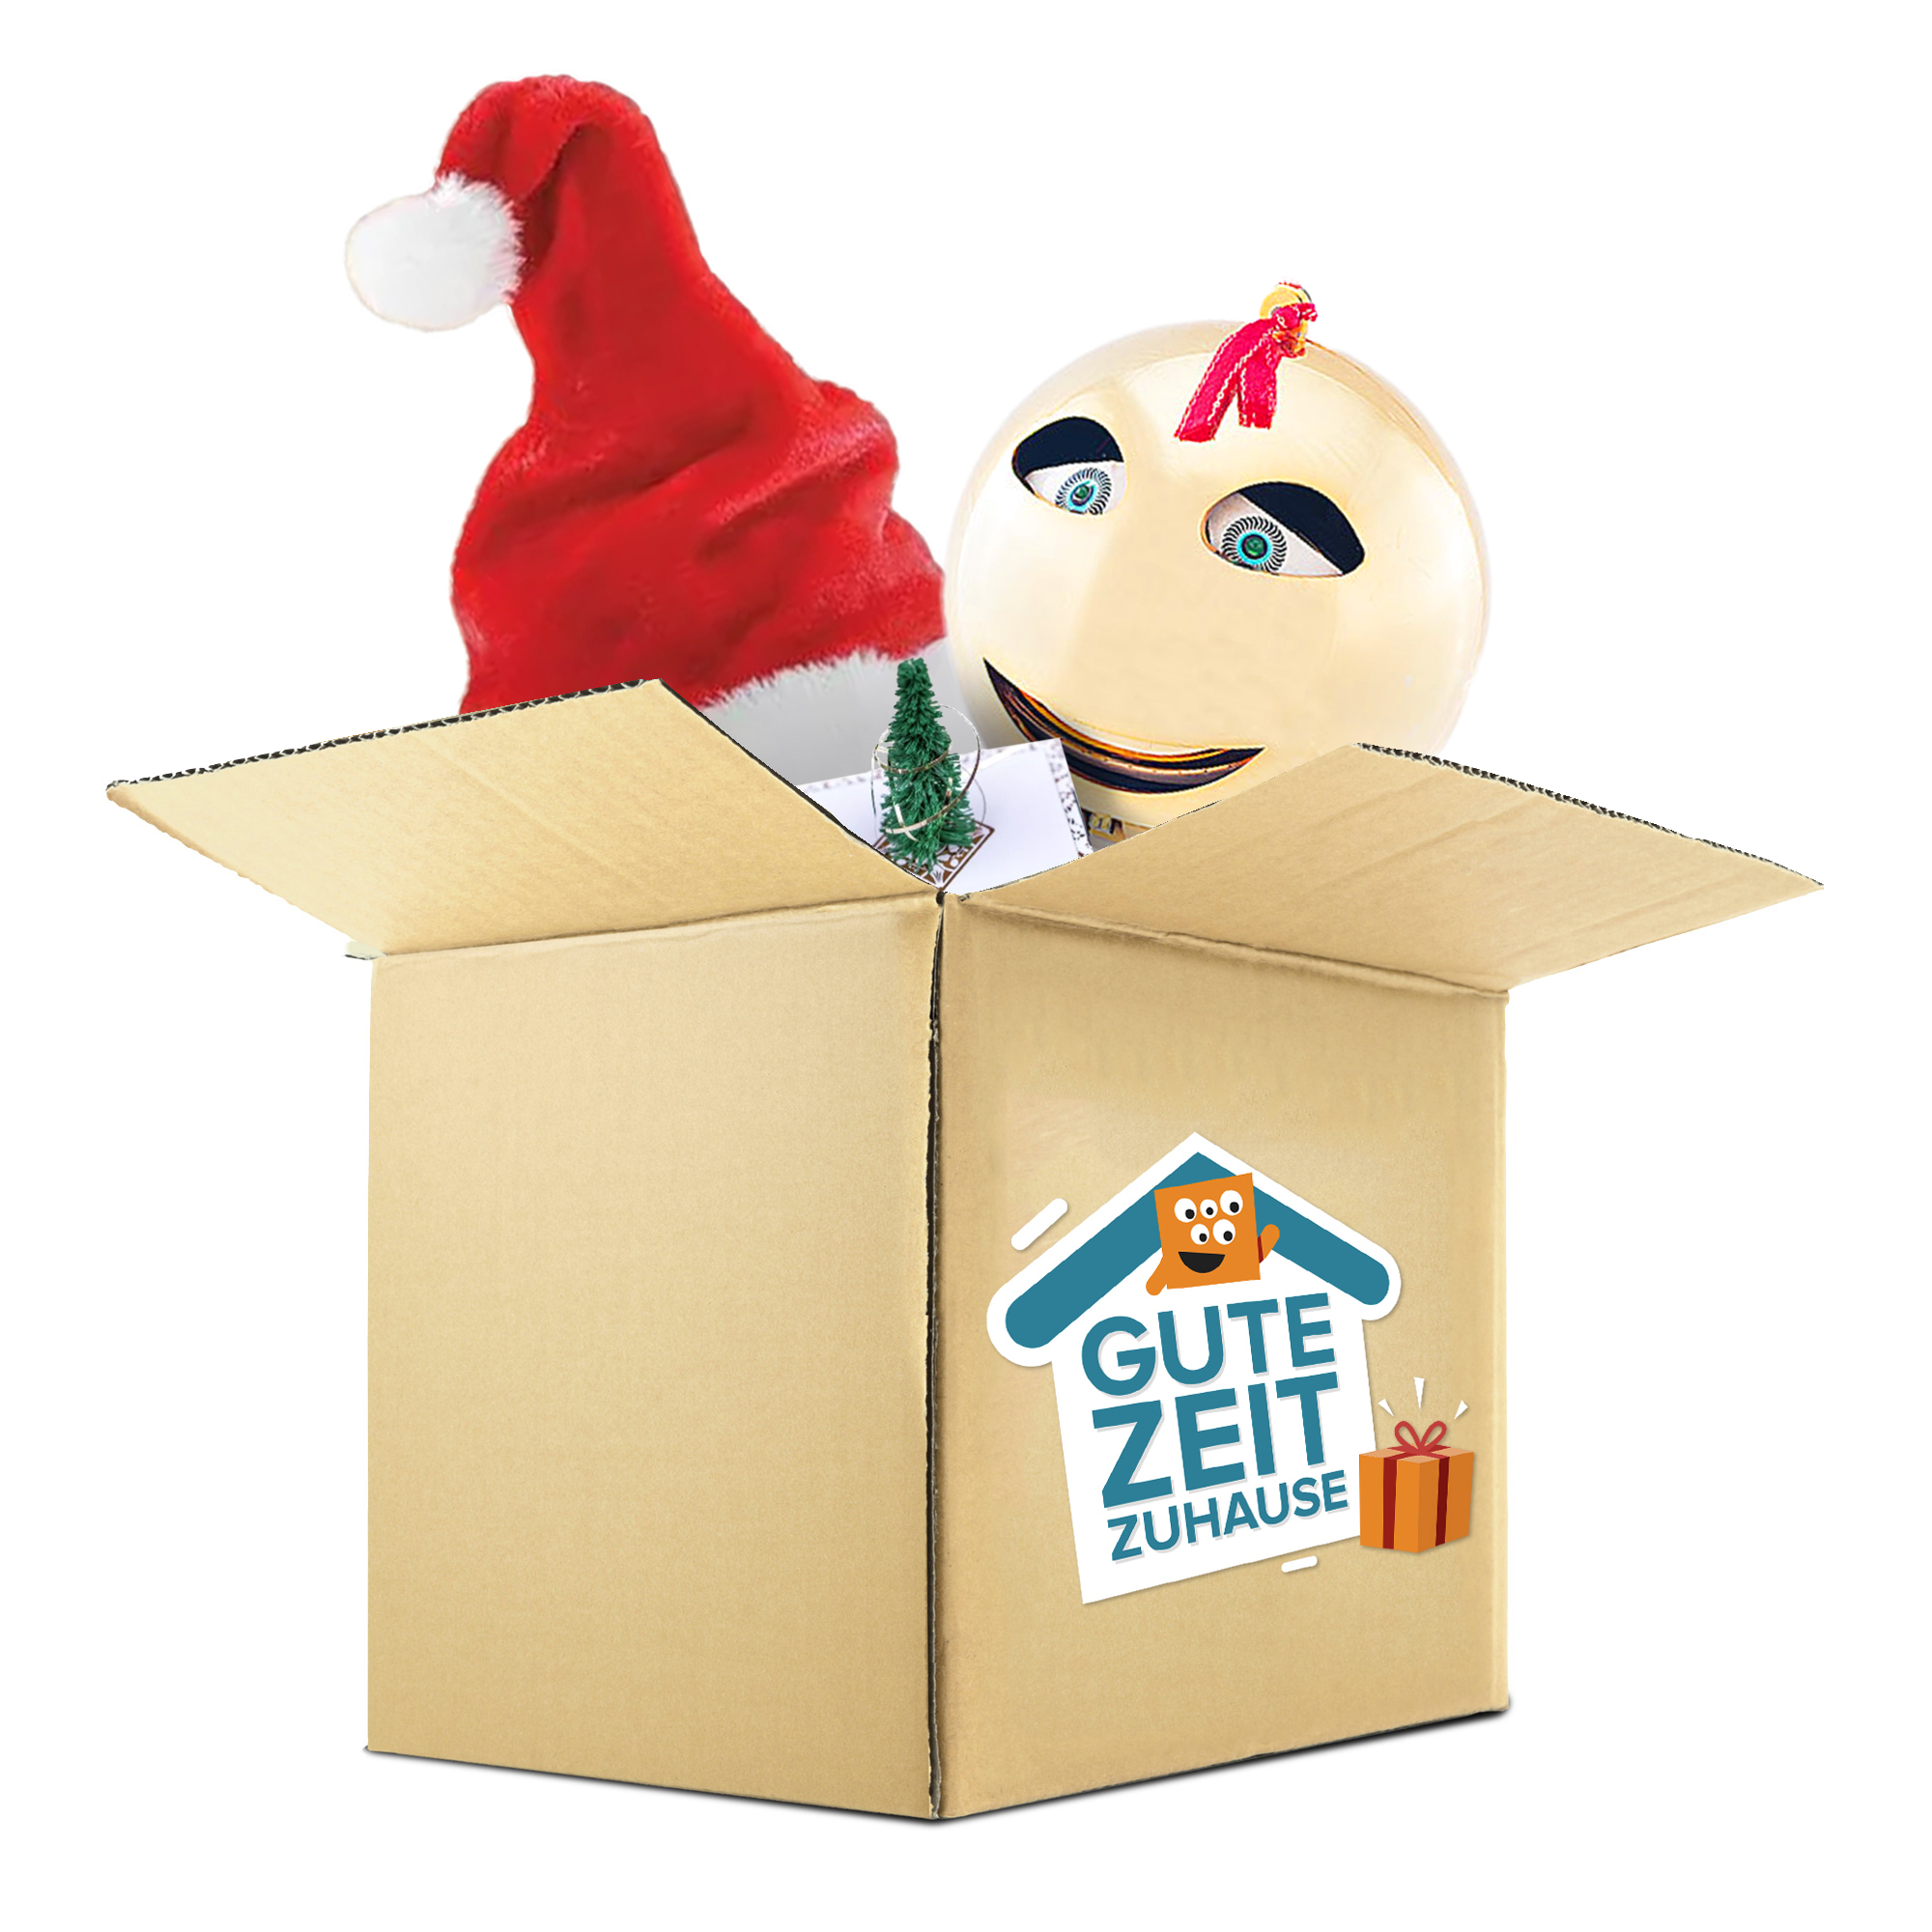 Gute Zeit Zuhause - Weihnachtsbox 1825-665-739-MZ - 4